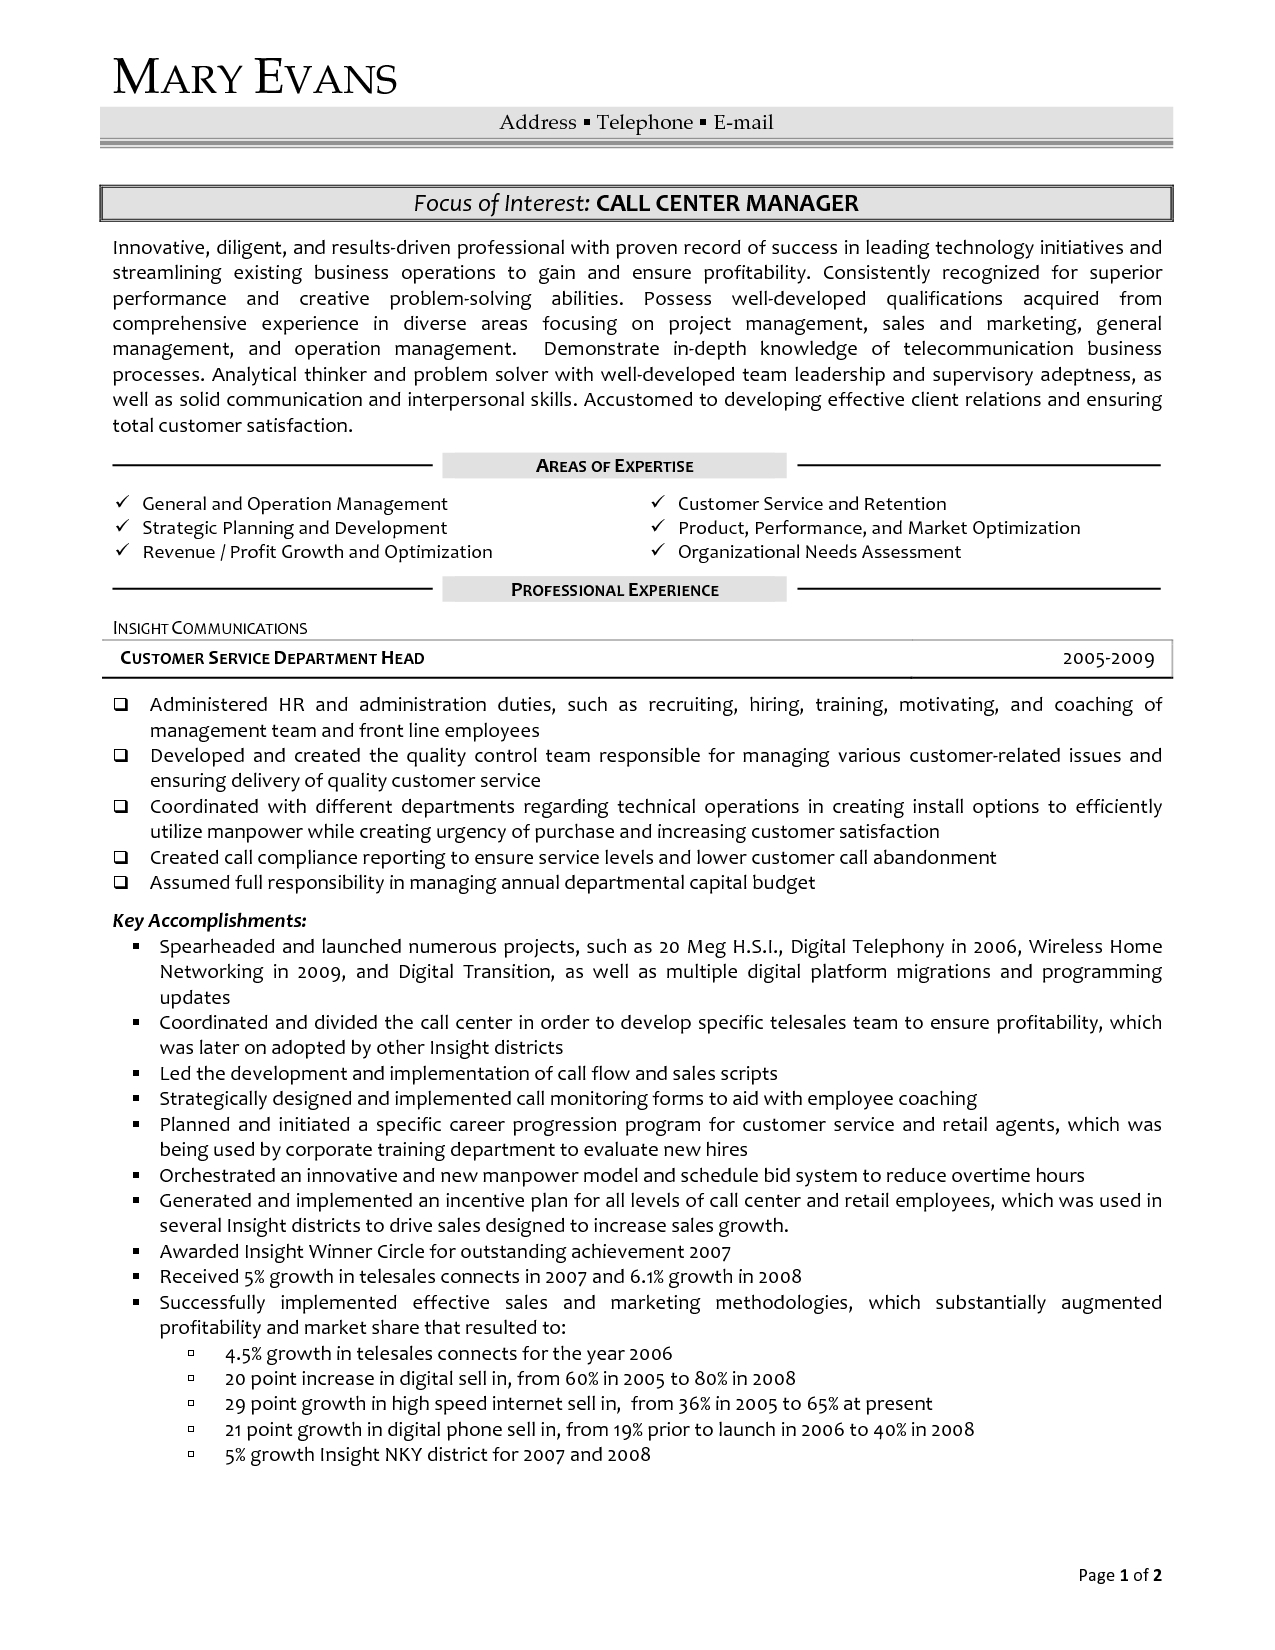 Enterprise Management Trainee Job Description For Resume Best Of